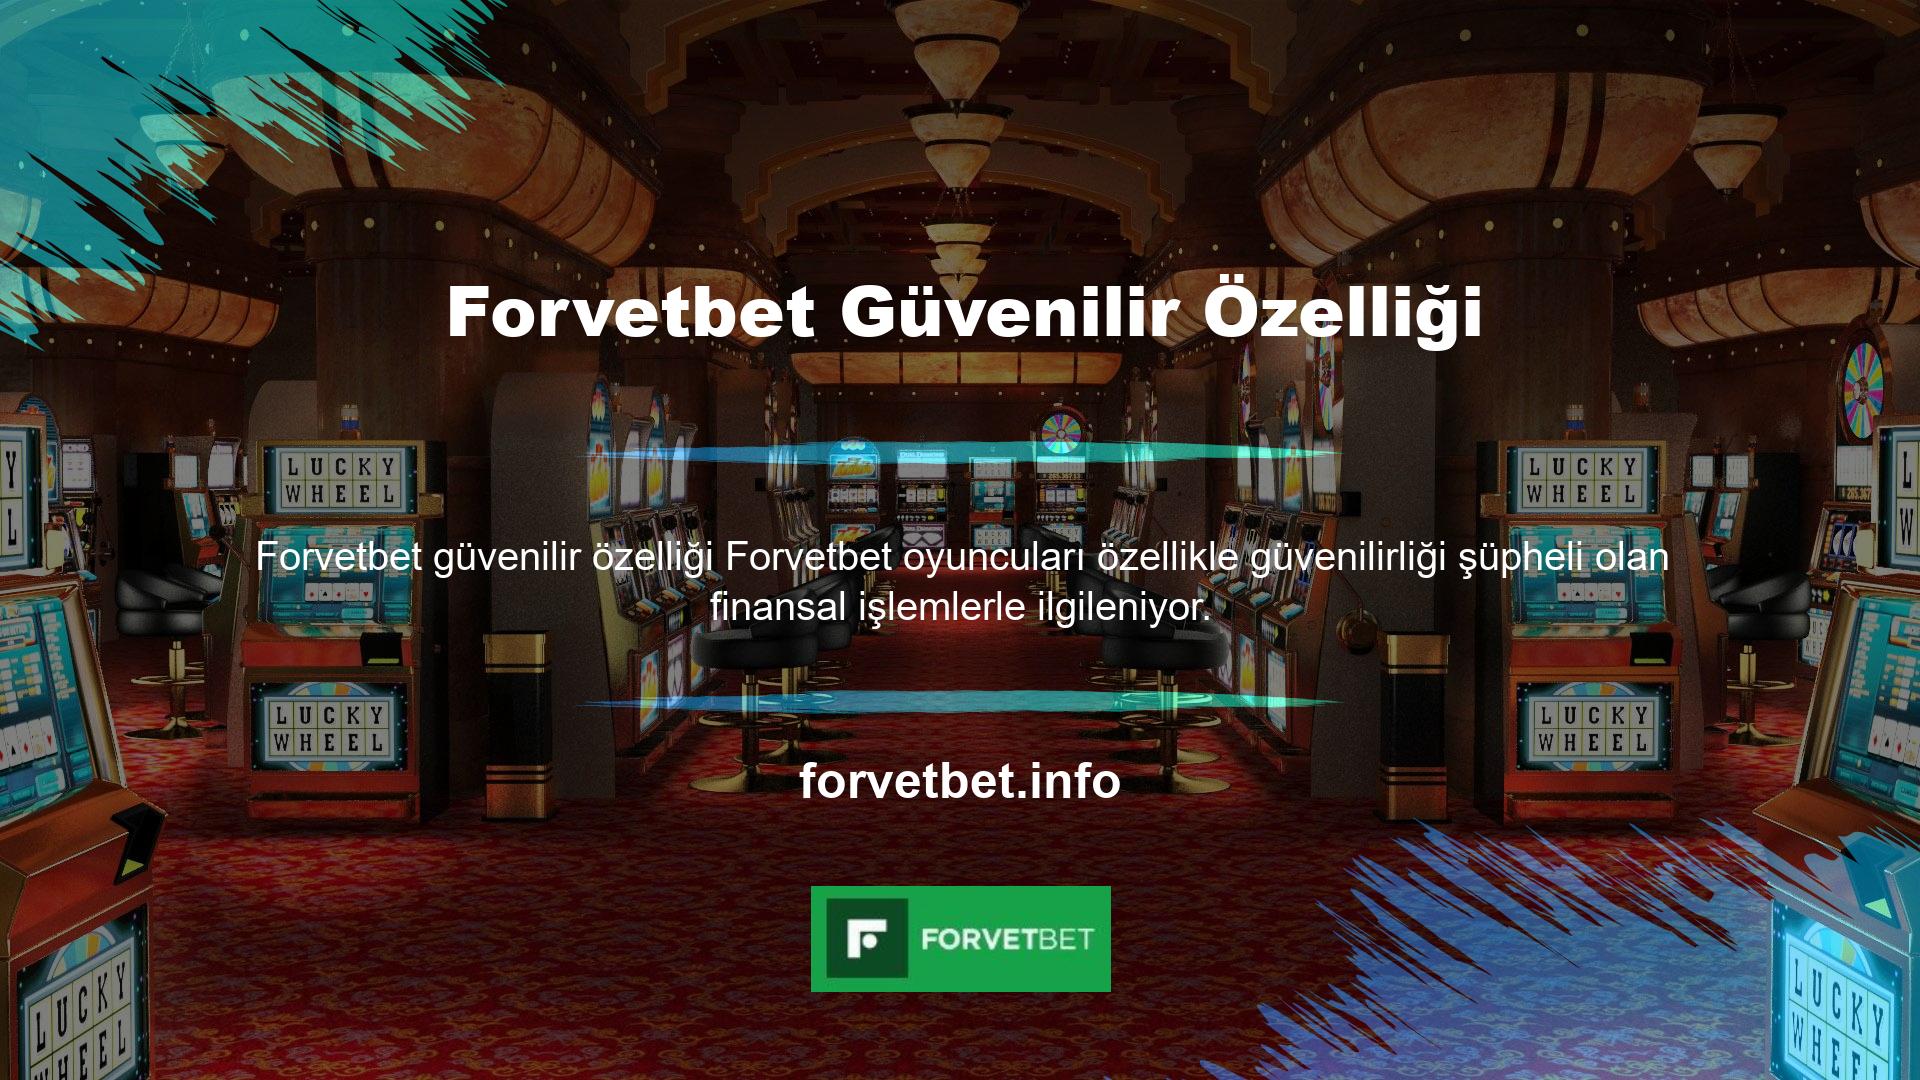 Bu nedenle Forvetbet, yatırım seçeneklerini kullanıcı bazında kontrol etme olanağına sahiptir